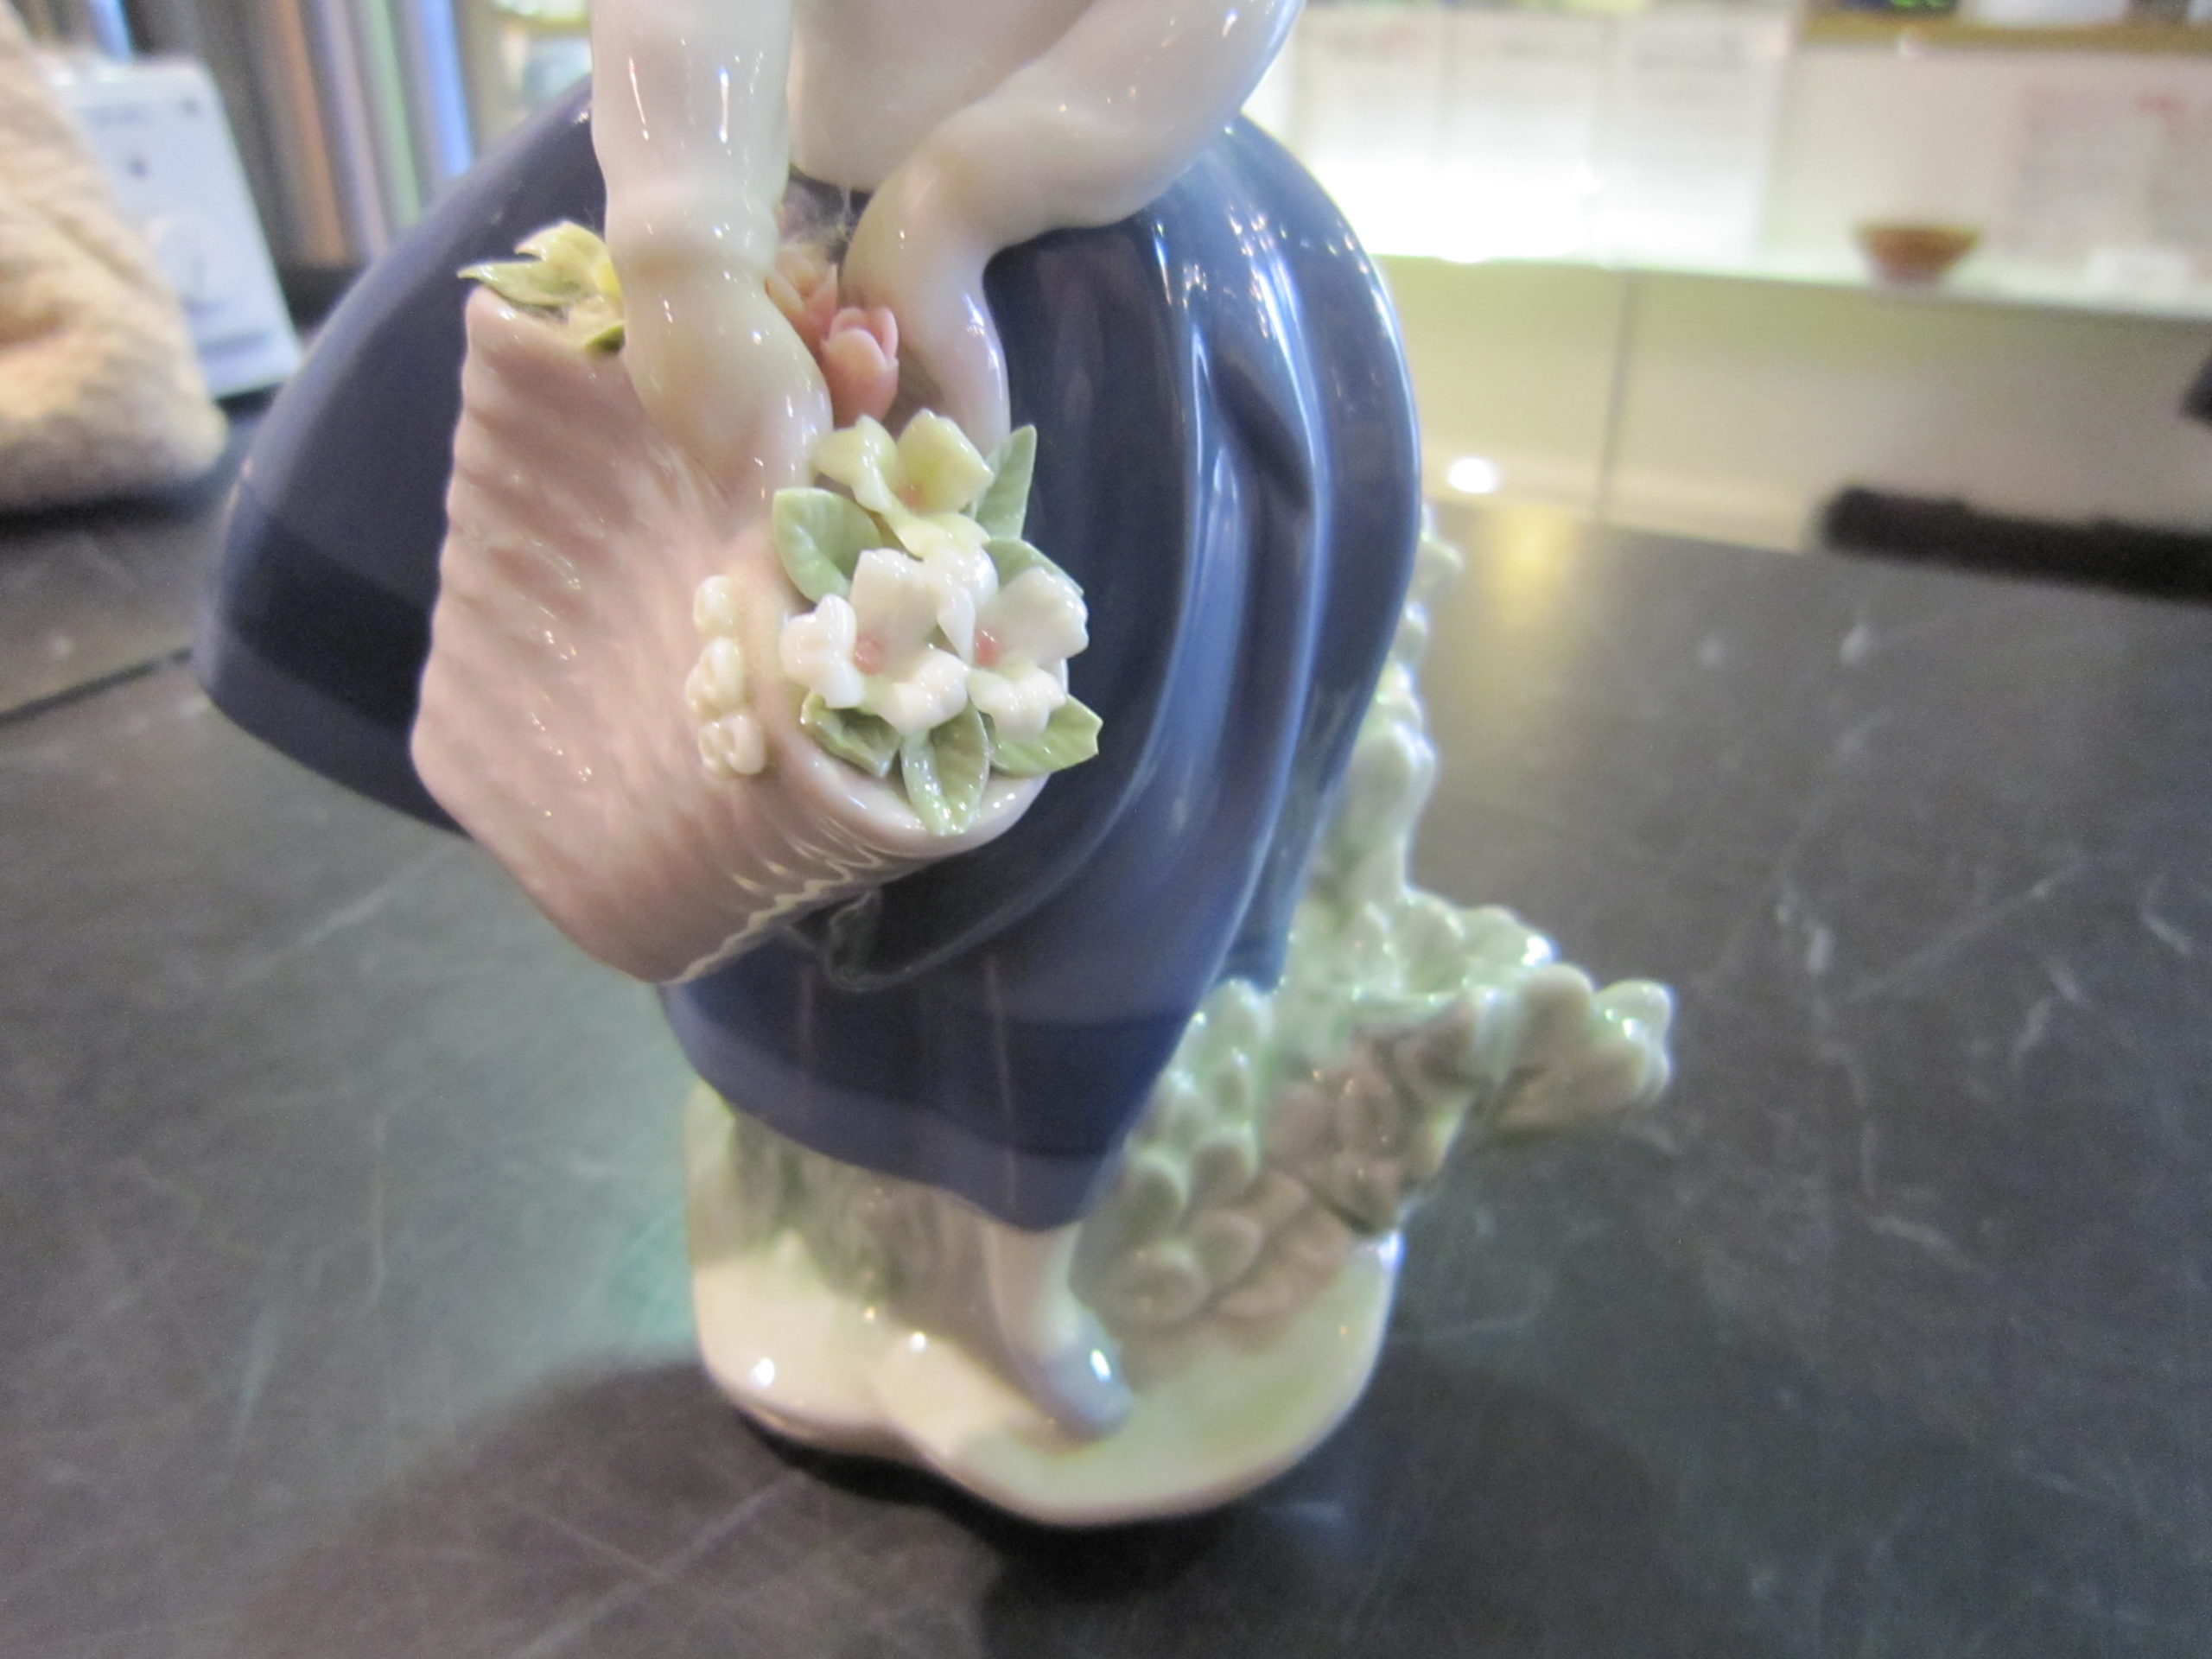 Lladro リヤドロ きれいな花ばかり 5222 少女 お花 hand made inスペイン 買取しました。 | 愛知と岐阜のリサイクル